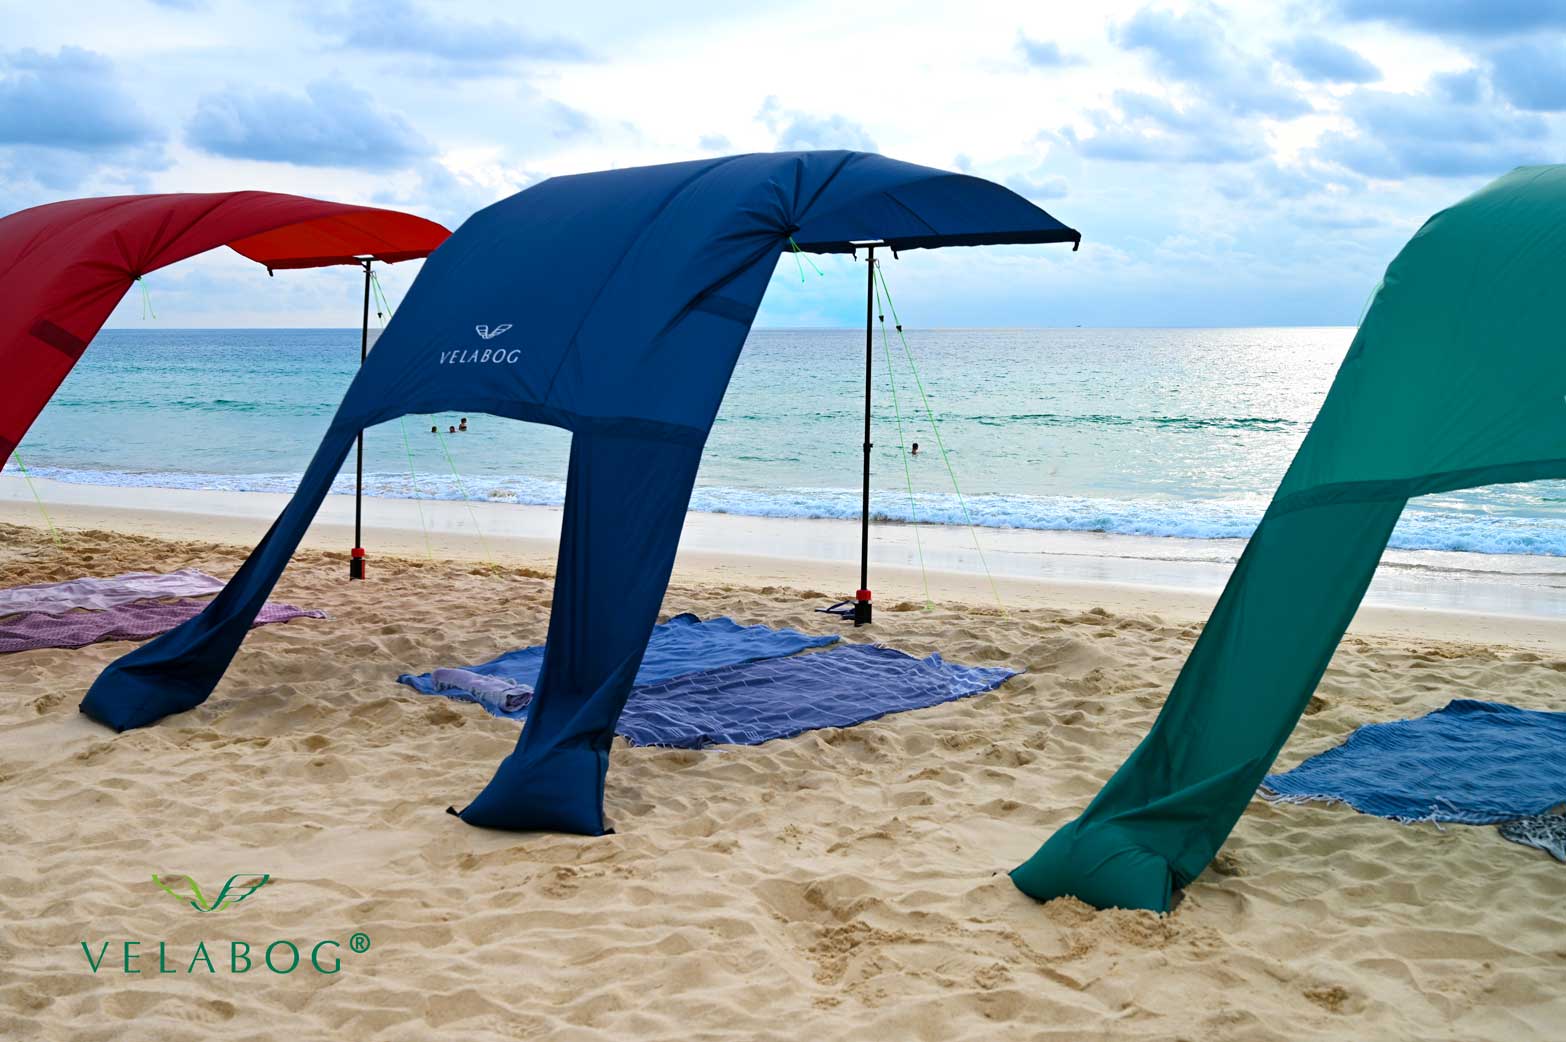 Tres toldos playa Velabog Breeze. La mejor refugio y protección solar para la playa en días de viento. Excelente resistencia al viento en comparación con sombrillas y carpas de playa. Opción de montaje desde viento ligero a fuerte.